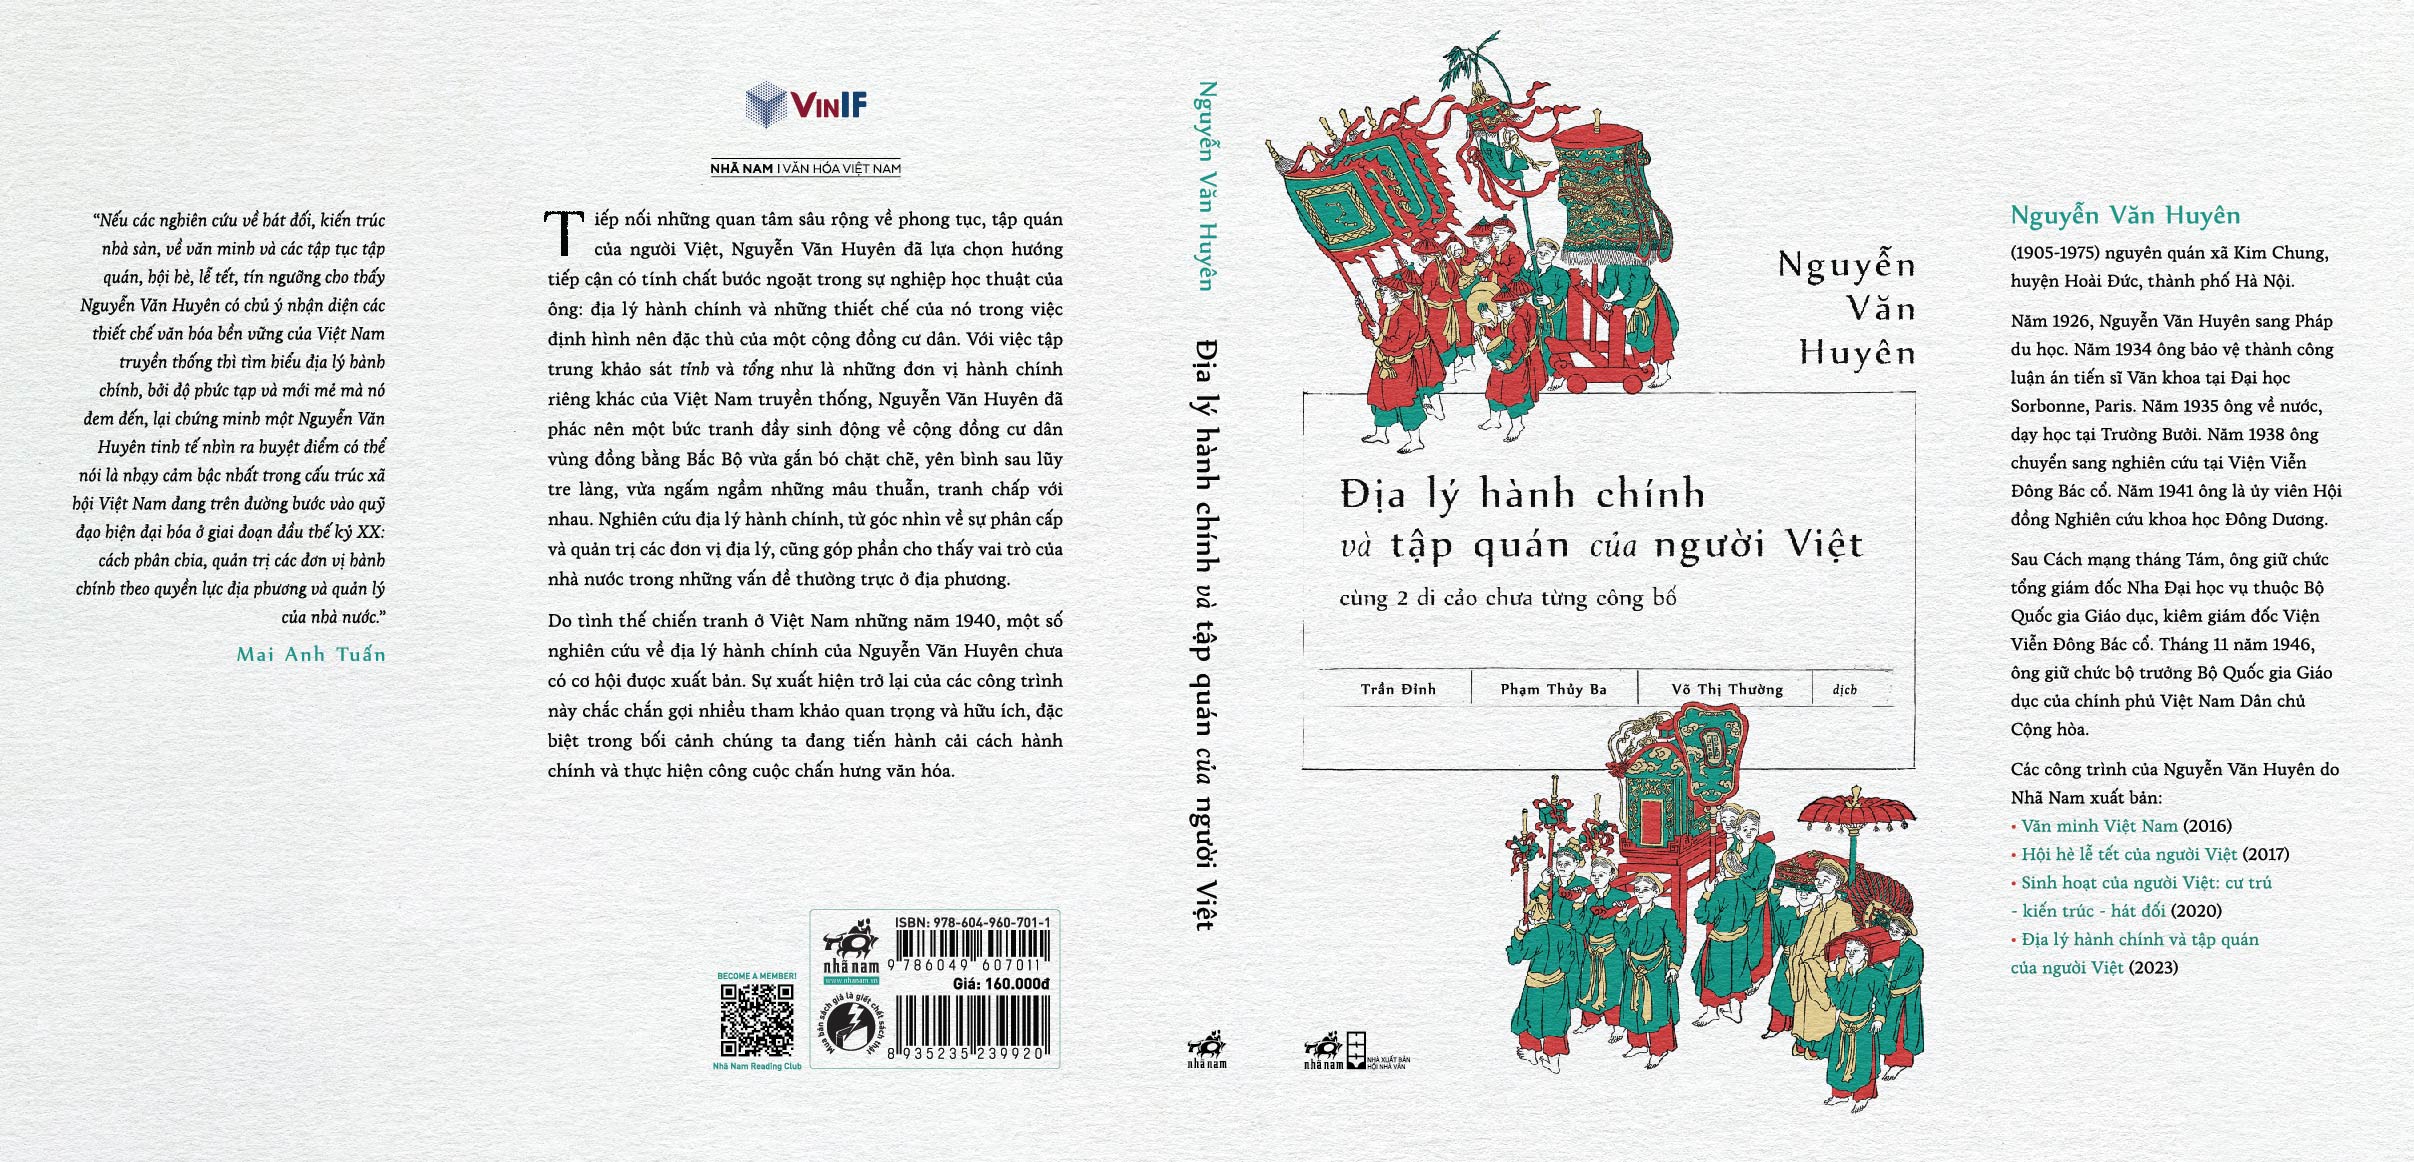 Sách - Địa lý hành chính và tập quán của người Việt cùng 2 di cảo chưa từng công bố (Nguyễn Văn Huyên) - Nhã Nam Official